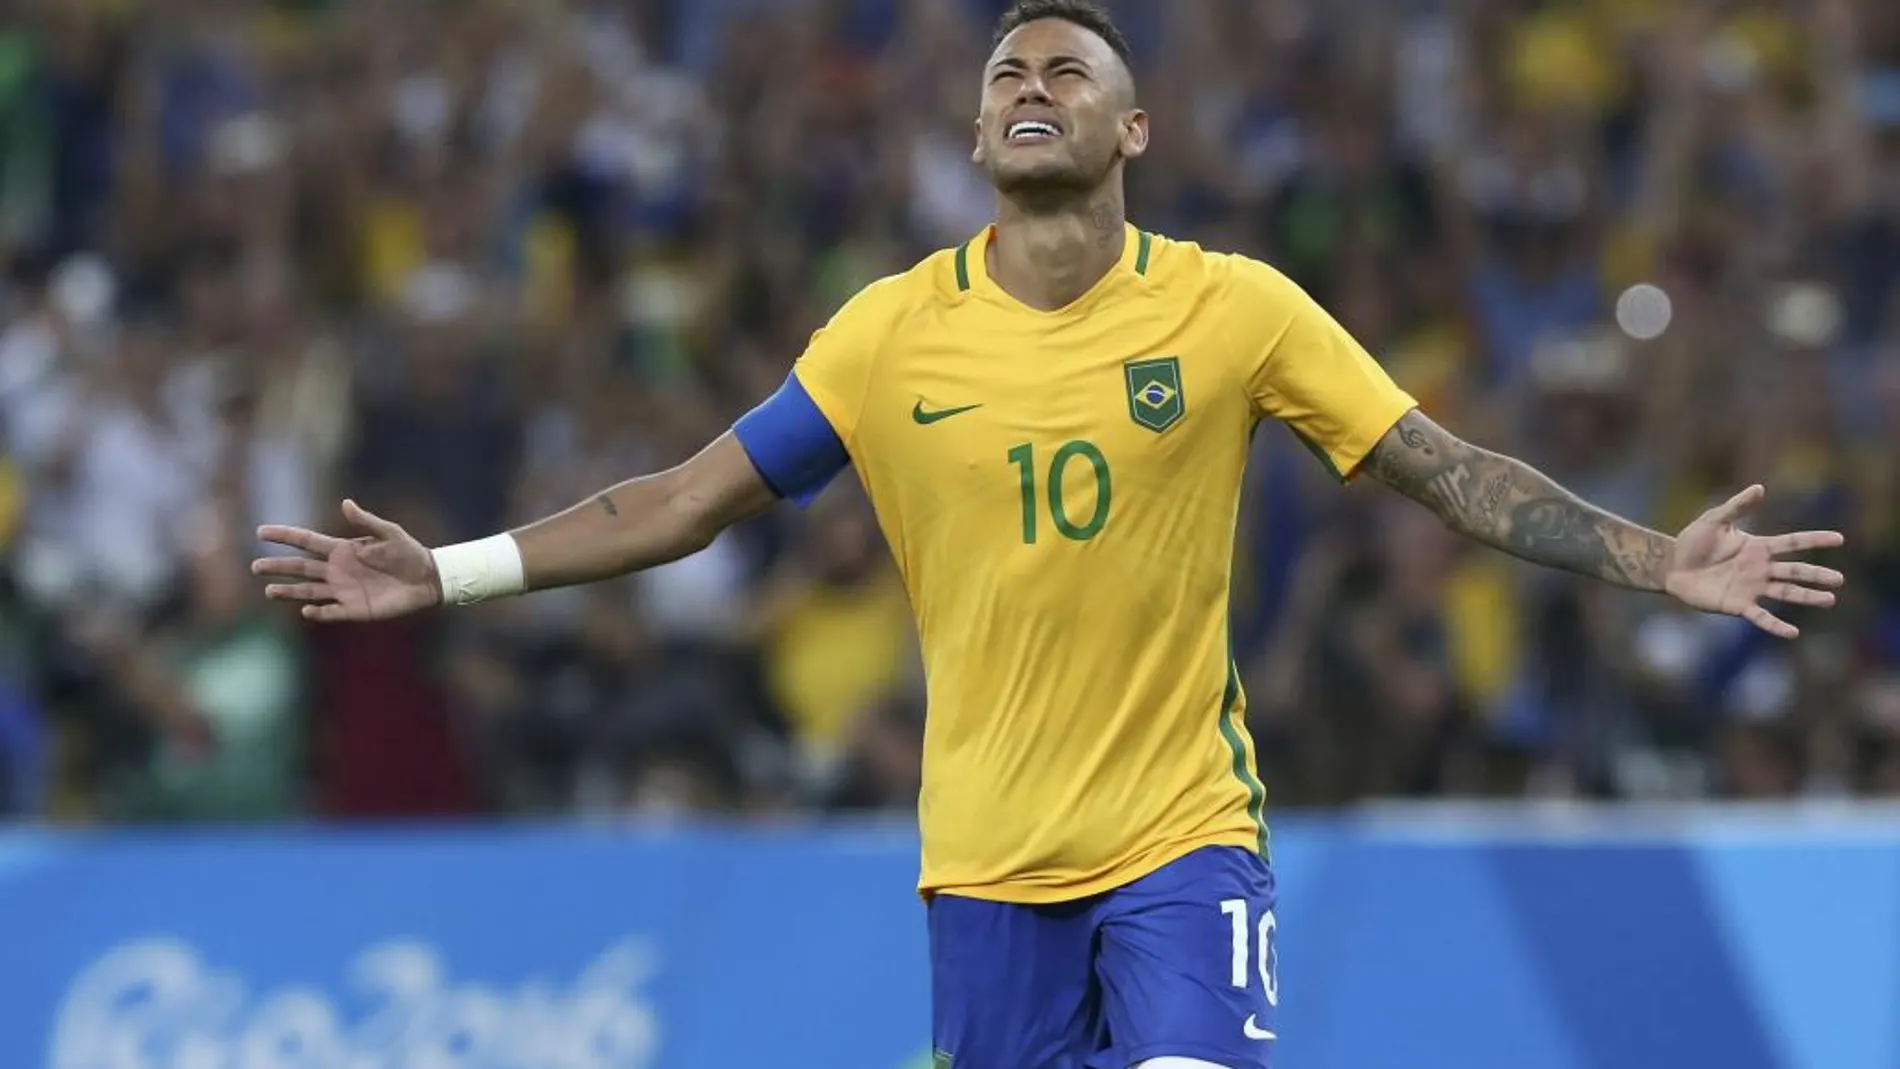 Neymar celebra el oro tras transformar el último penalti